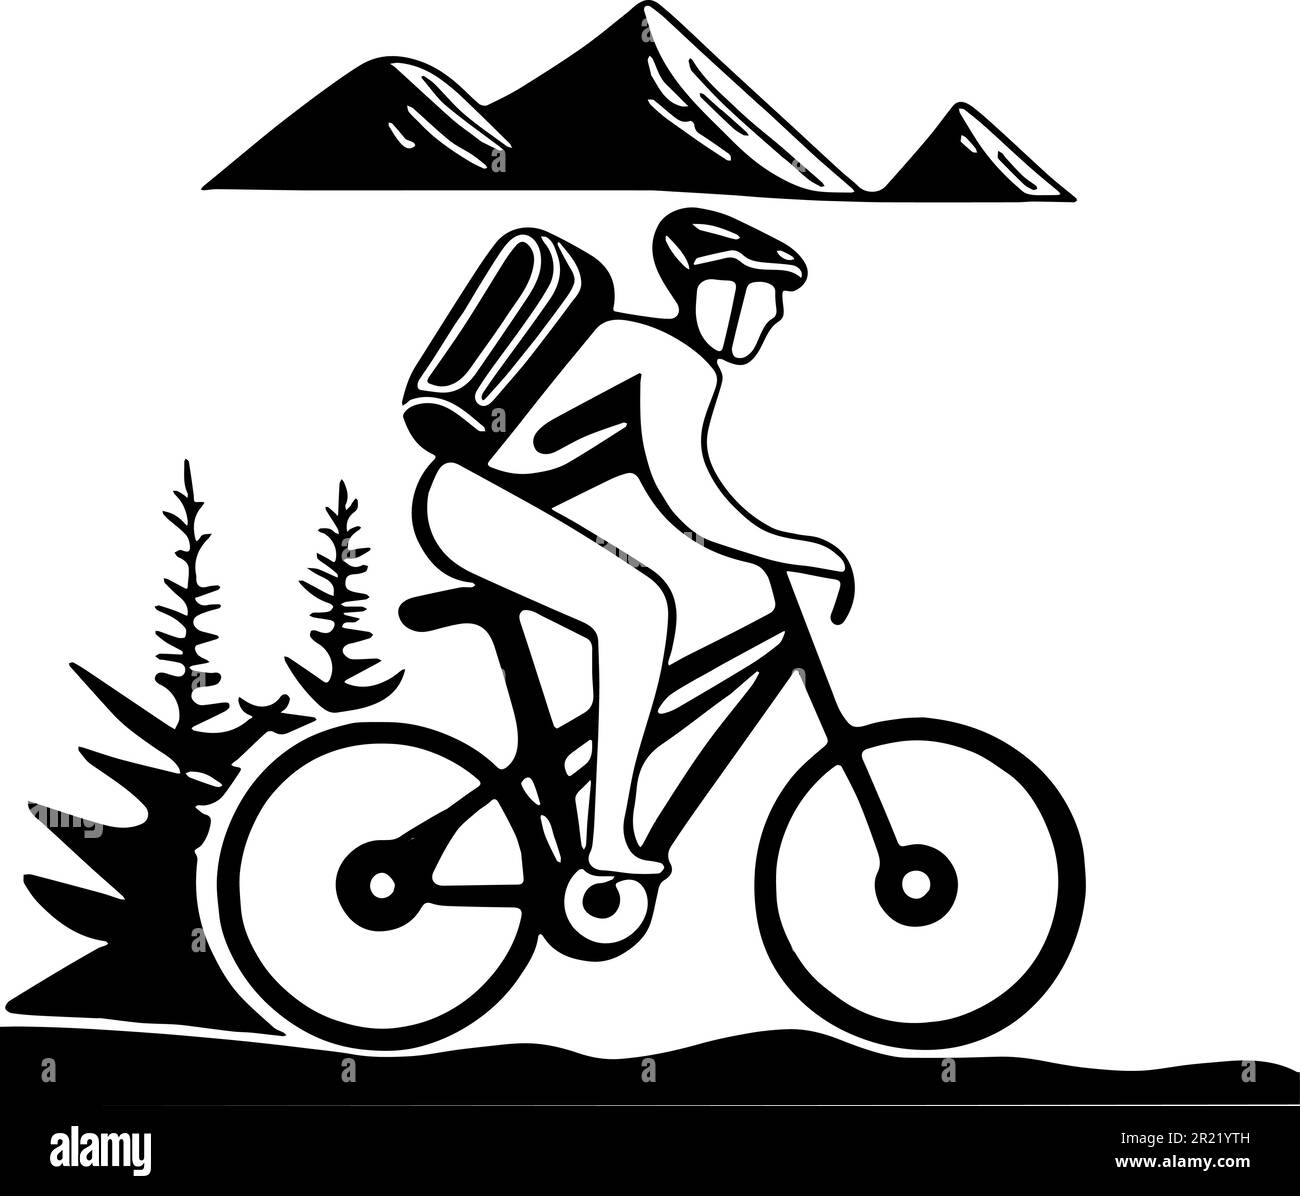 Ein Mountainbike-Mann fährt auf einem Plateau. Hinter ihm liegen sichtbare Berggipfel und Tannen. Er trägt Fahrradhelm und Rucksack. Vektor ico Stock Vektor